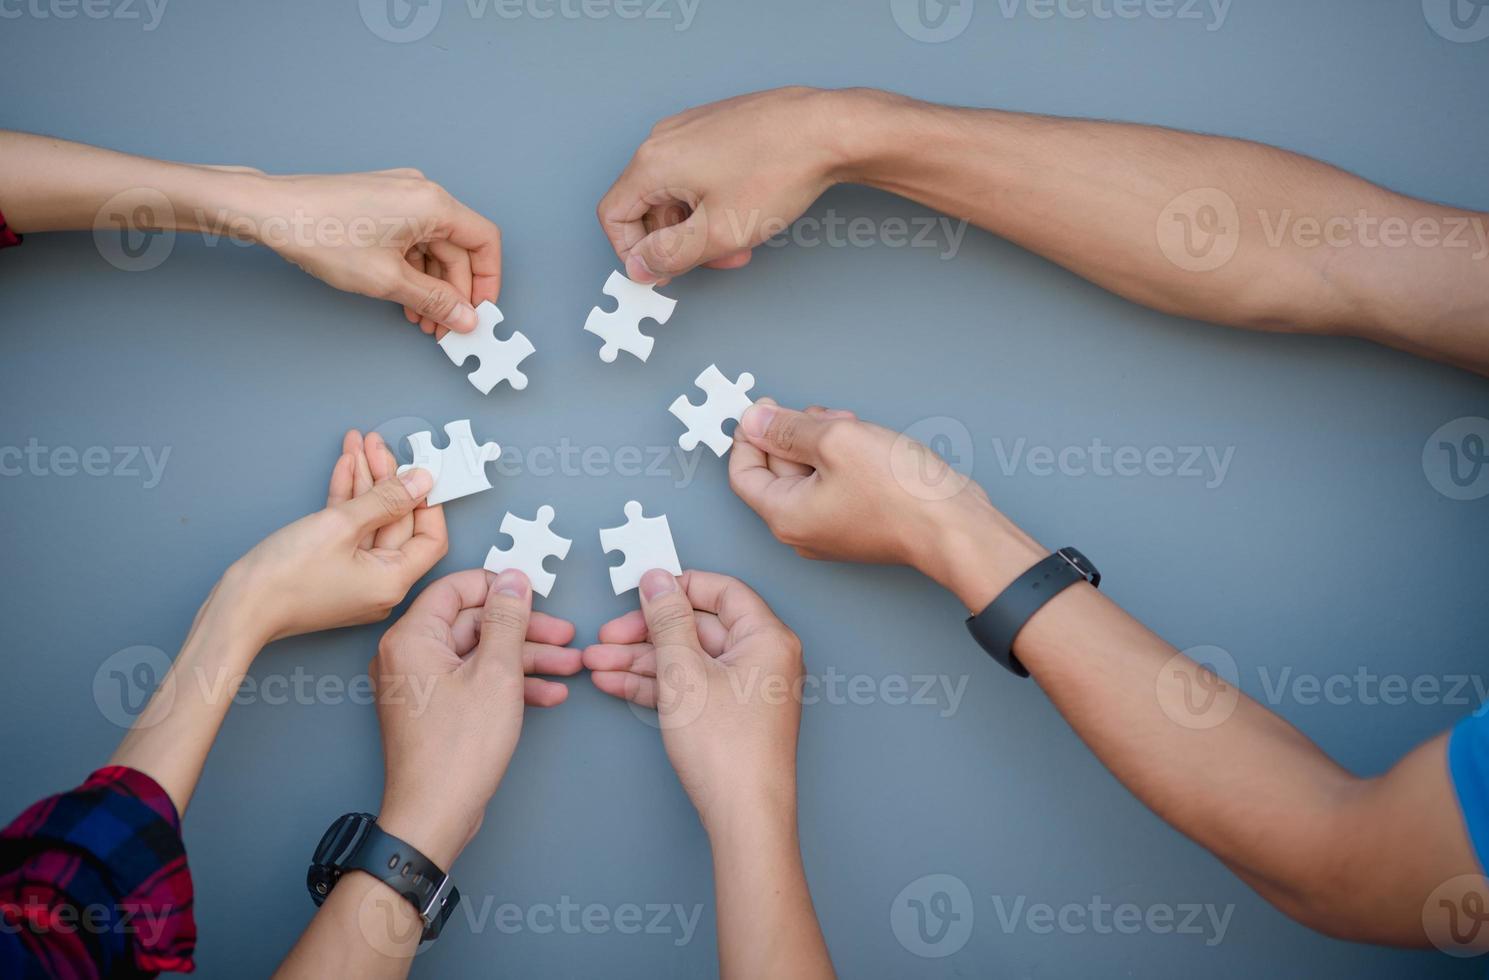 een beeld op hoog niveau van zakenmensen die puzzels oplossen op een grijze achtergrond foto